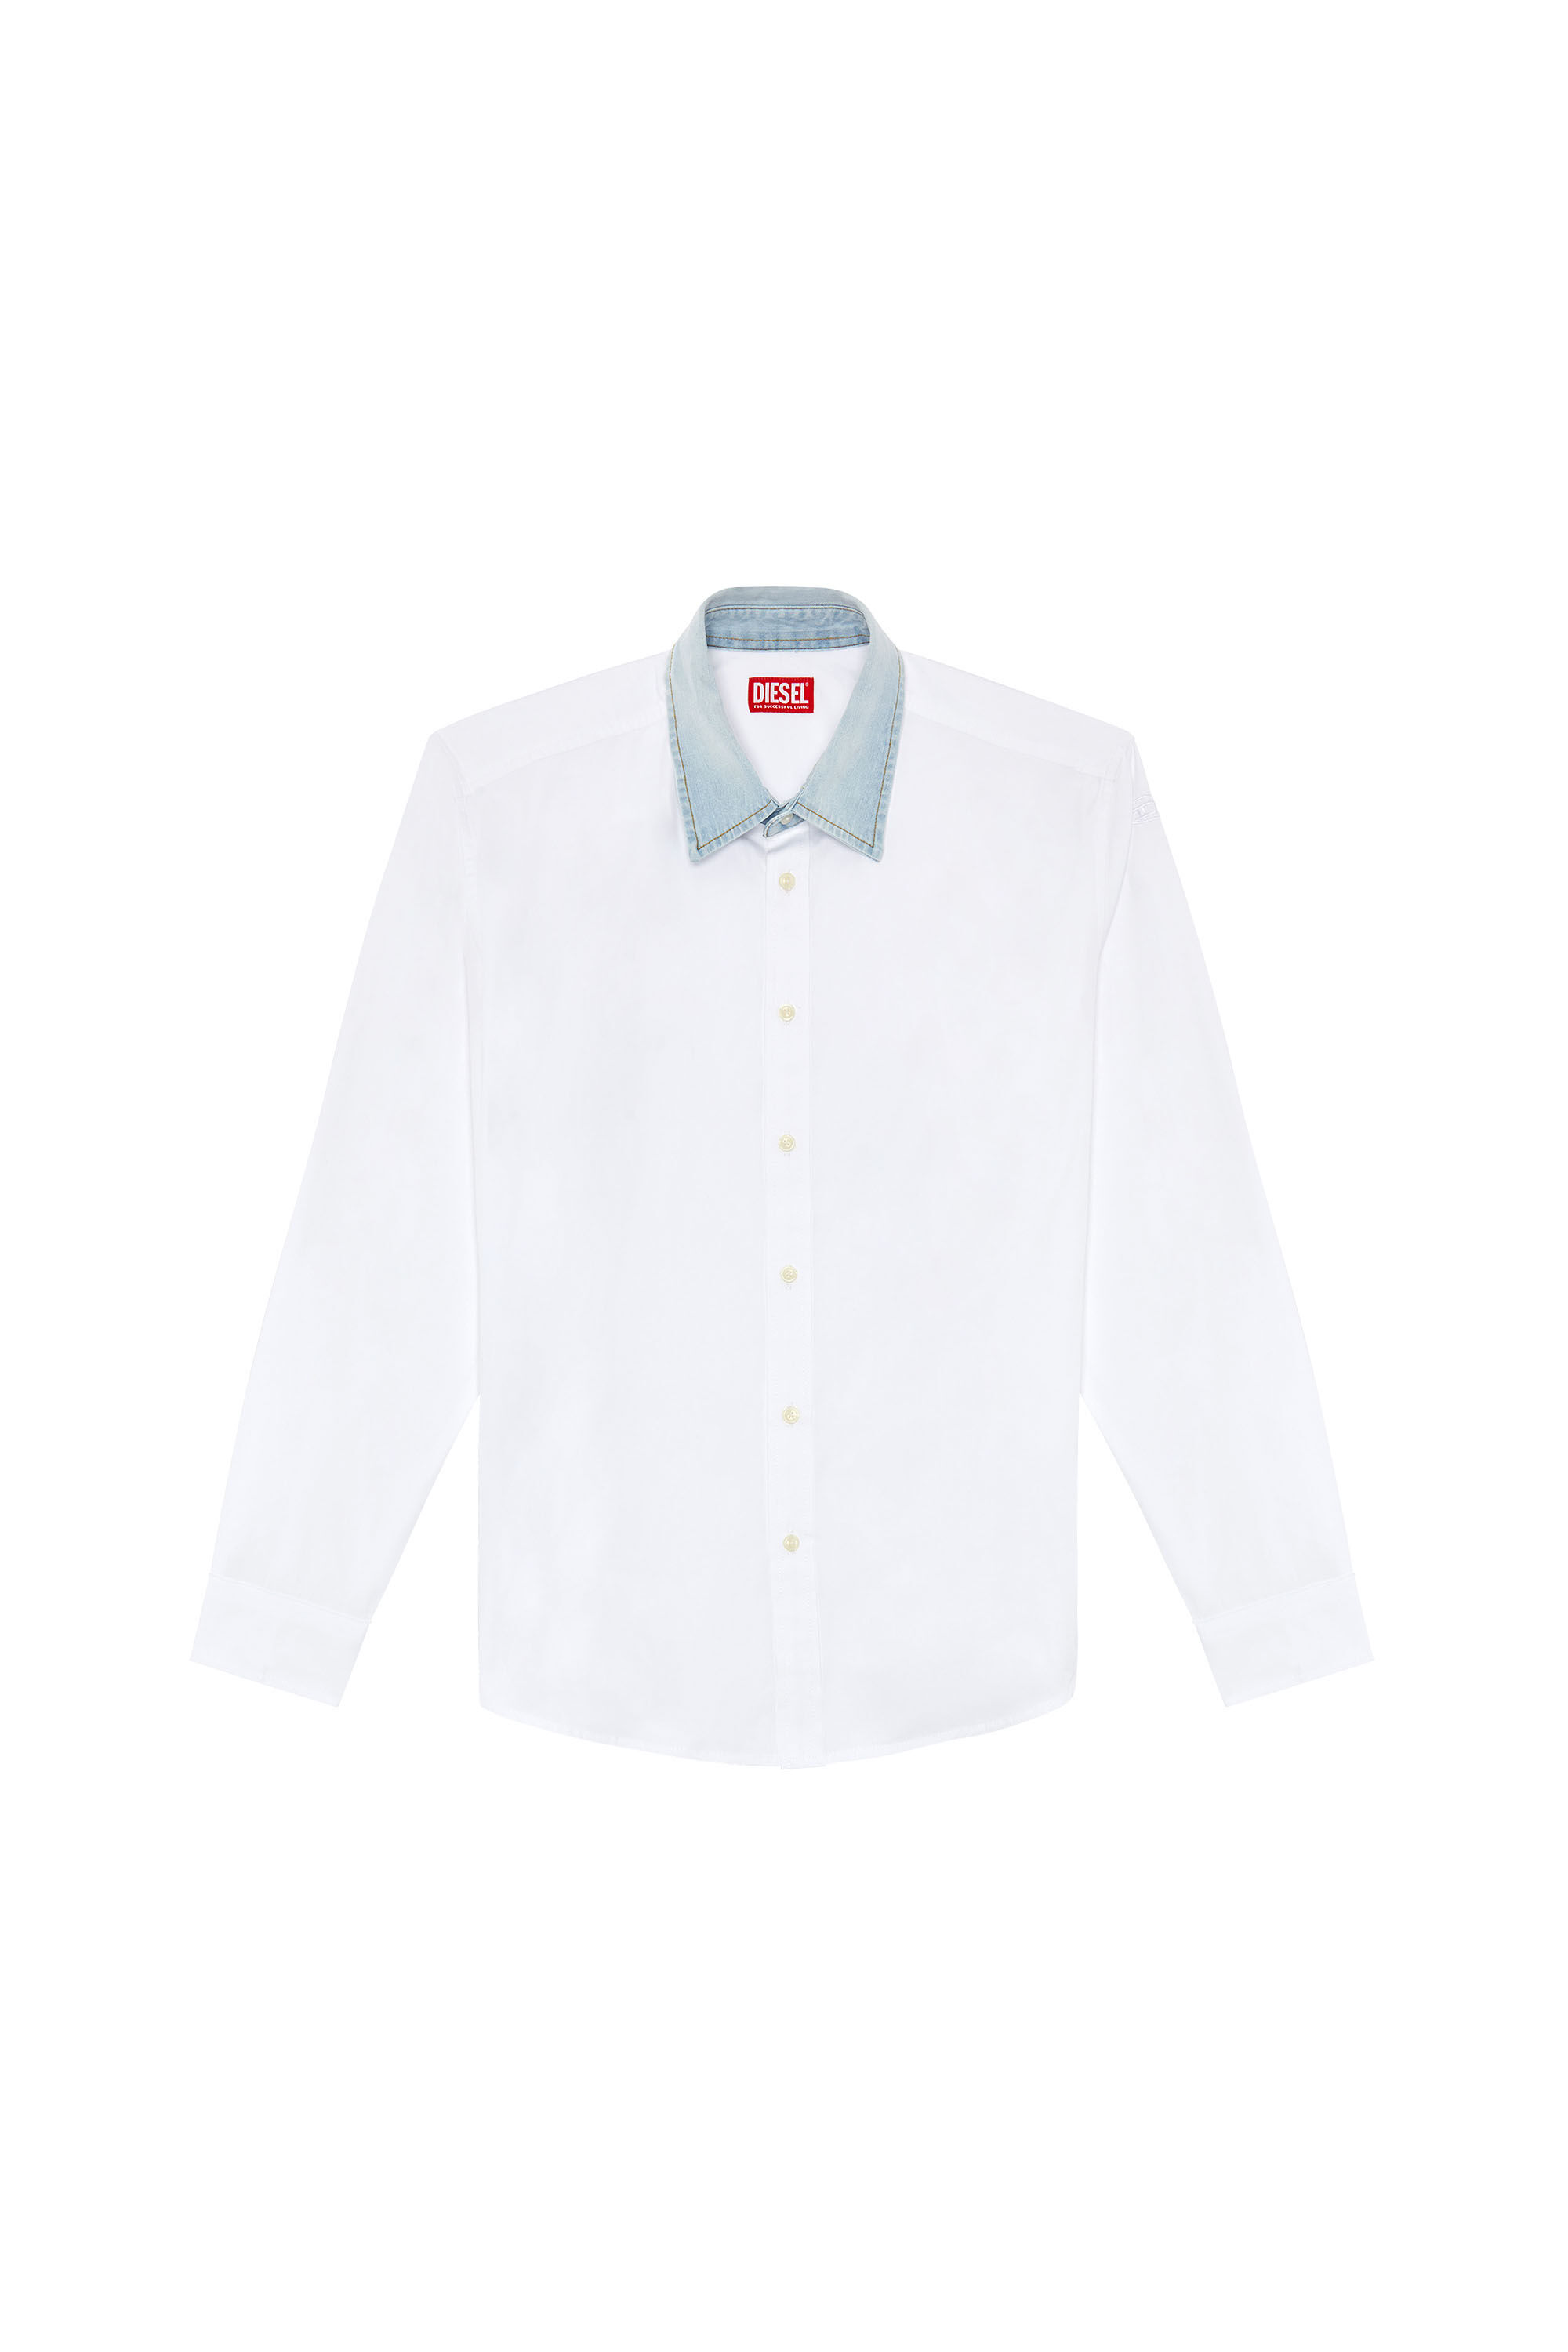 Diesel - S-HOLLS, Man Cotton shirt with denim collar in White - Image 2